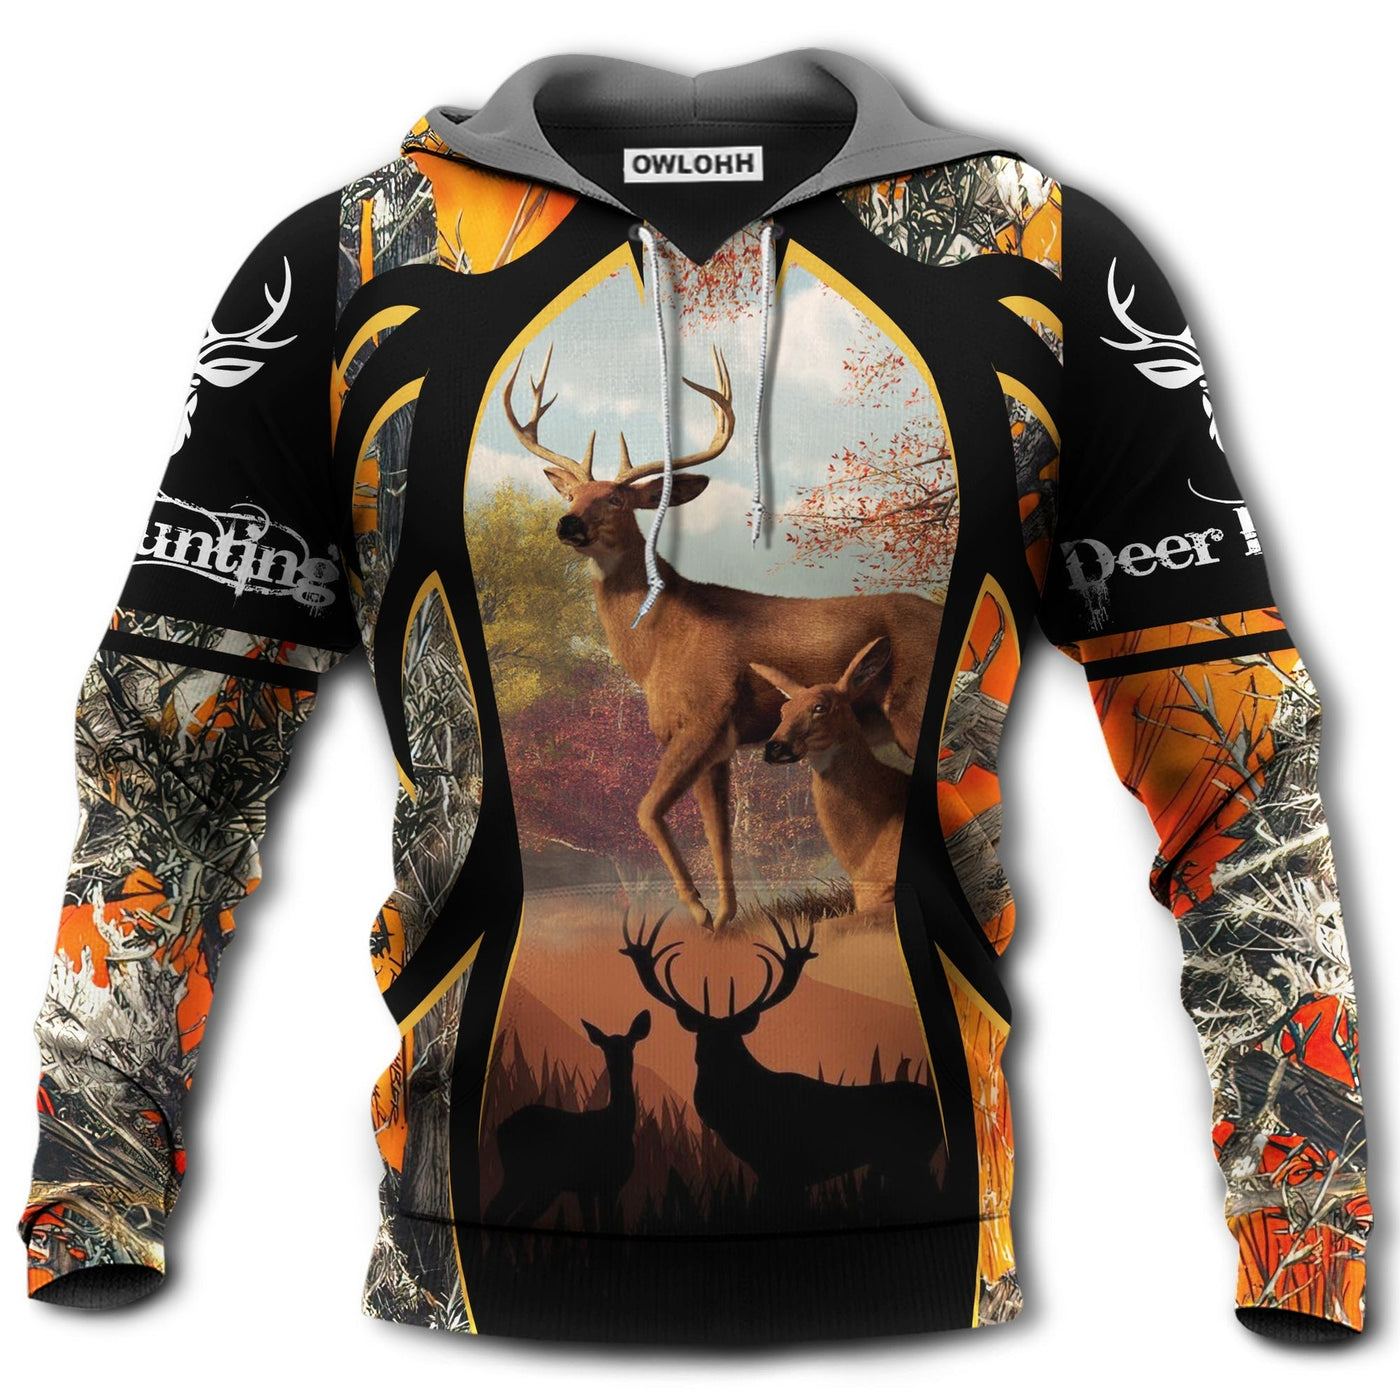 Unisex Hoodie / S Hunting Deer Black And Orange Style In Spring's Weather - Hoodie - Owls Matrix LTD